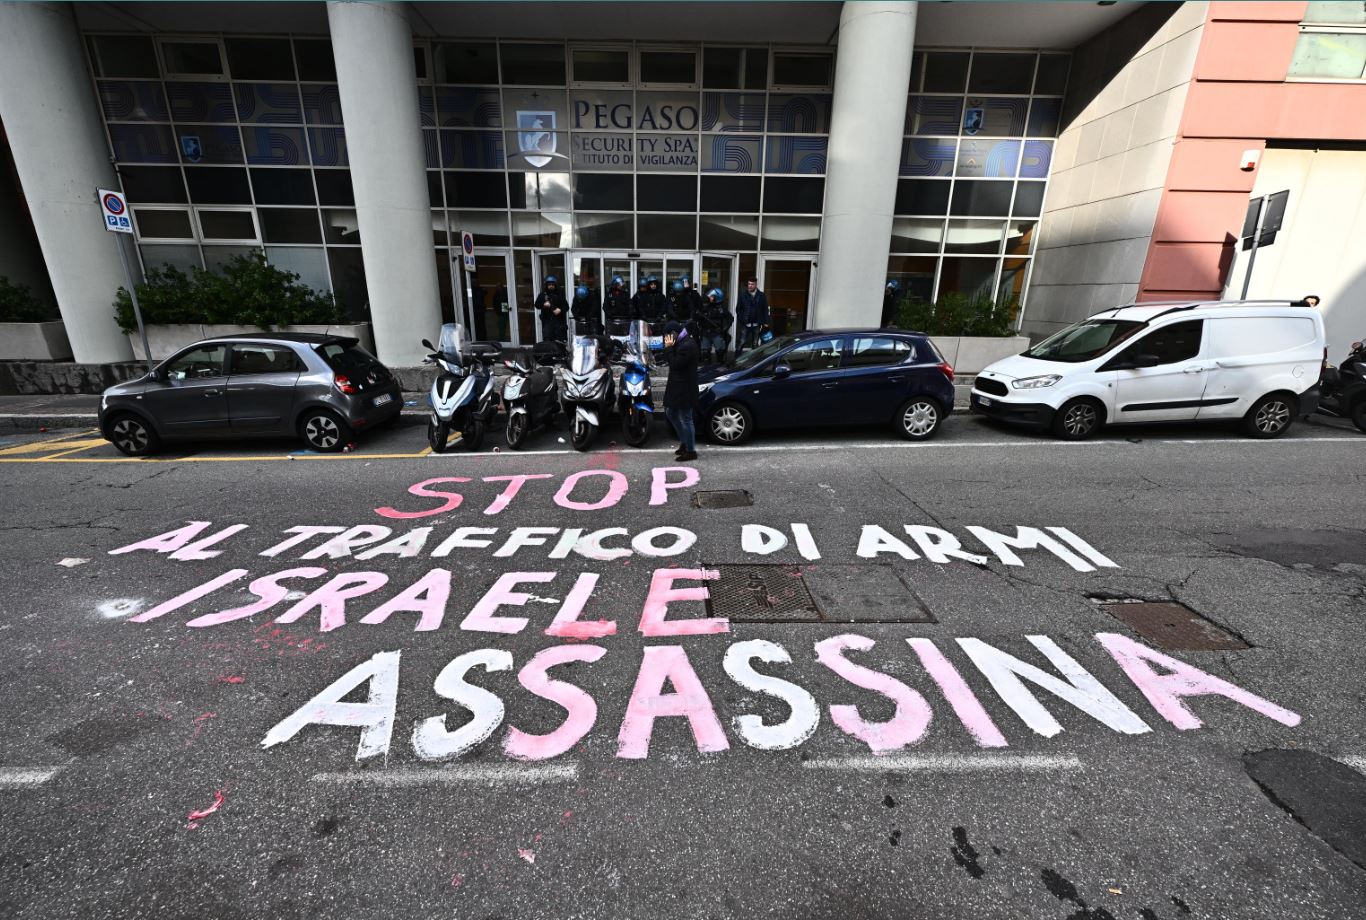 Una scritta sul suolo condanna la rappresaglia israeliana contro la Striscia di Gaza